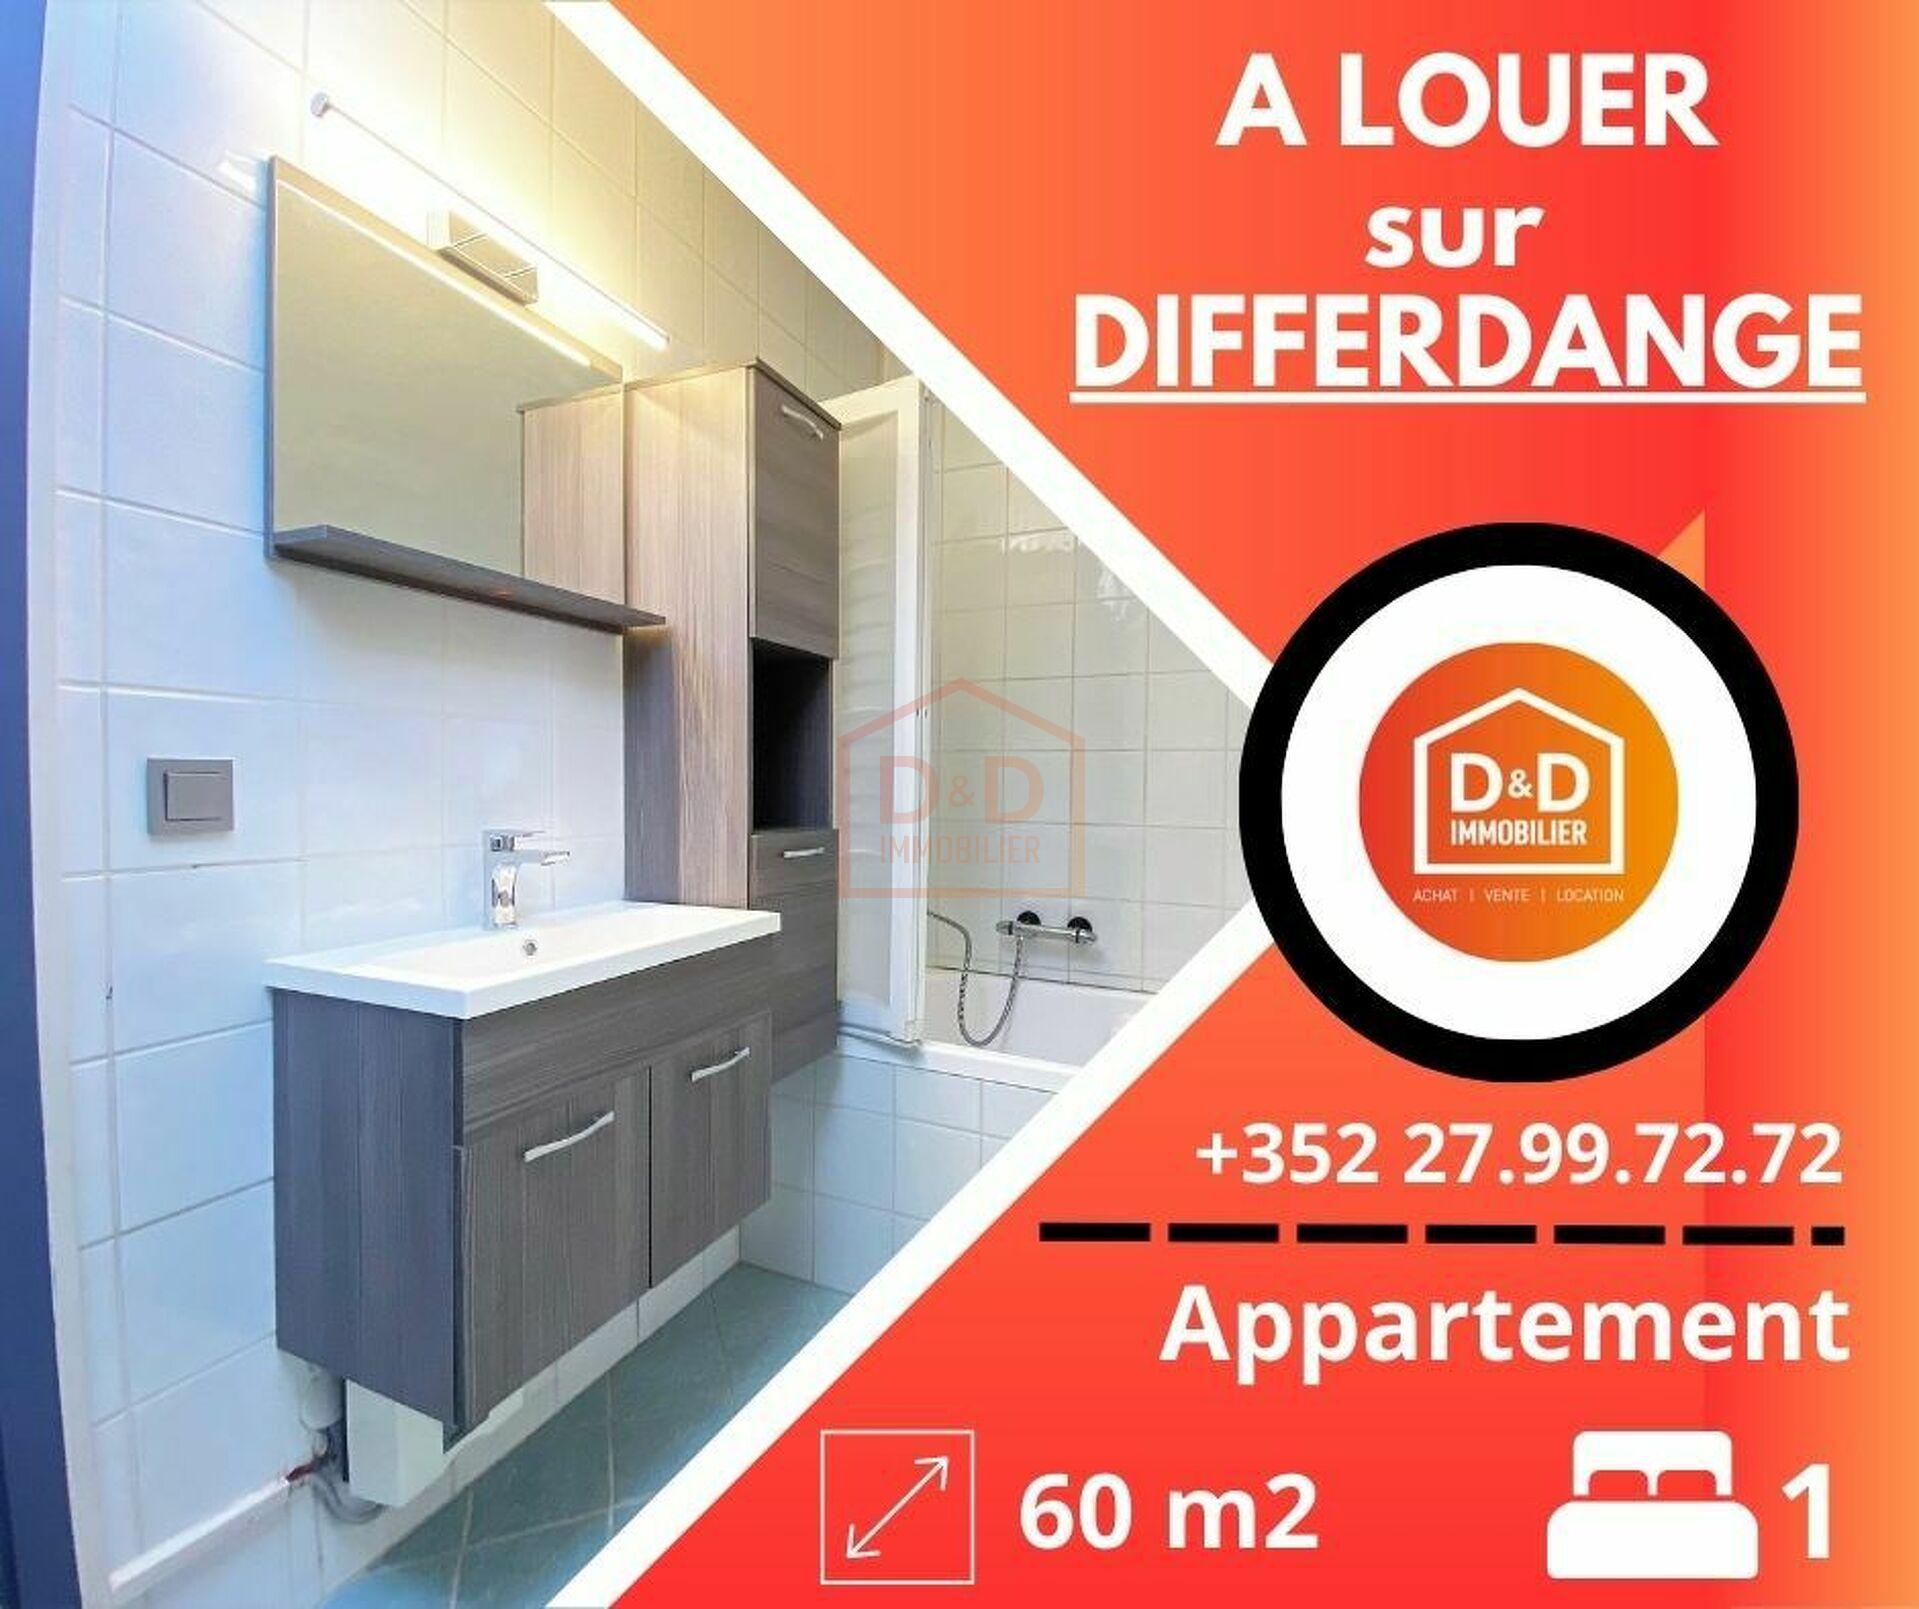 Appartement à Differdange, 60 m², 1 chambre, 1 salle de bain, 1 350 €/mois